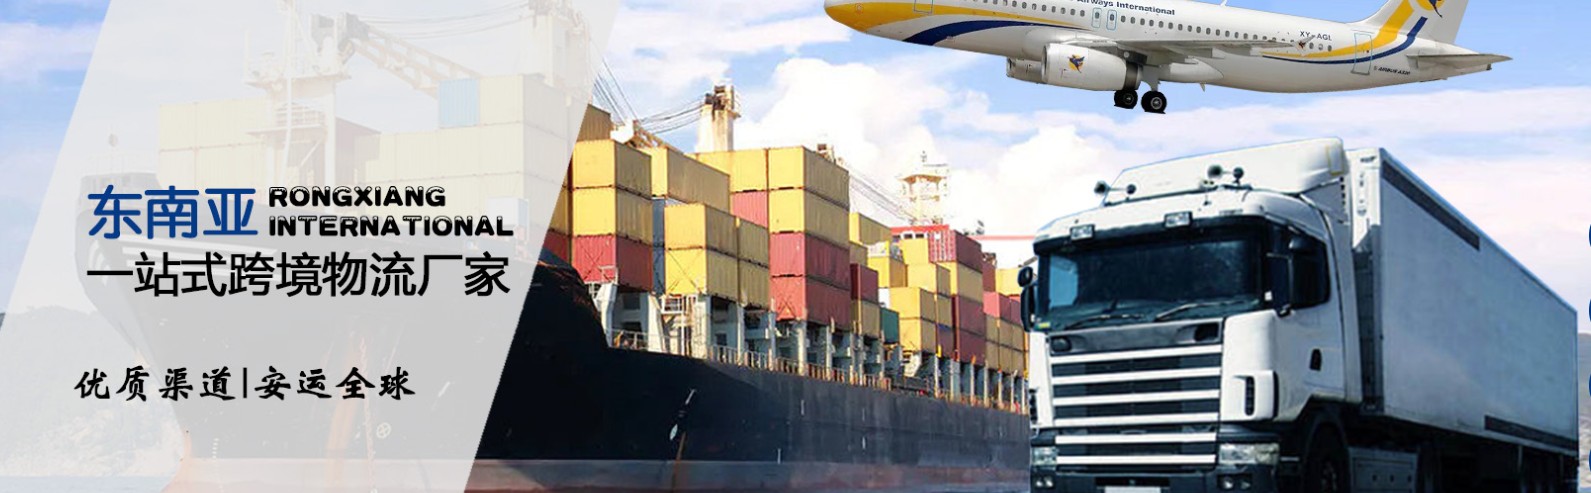 马来西亚拼箱价格 马来西亚海运代理 马来西亚散货拼箱价格 马来西亚船期查询国际物流货运代理